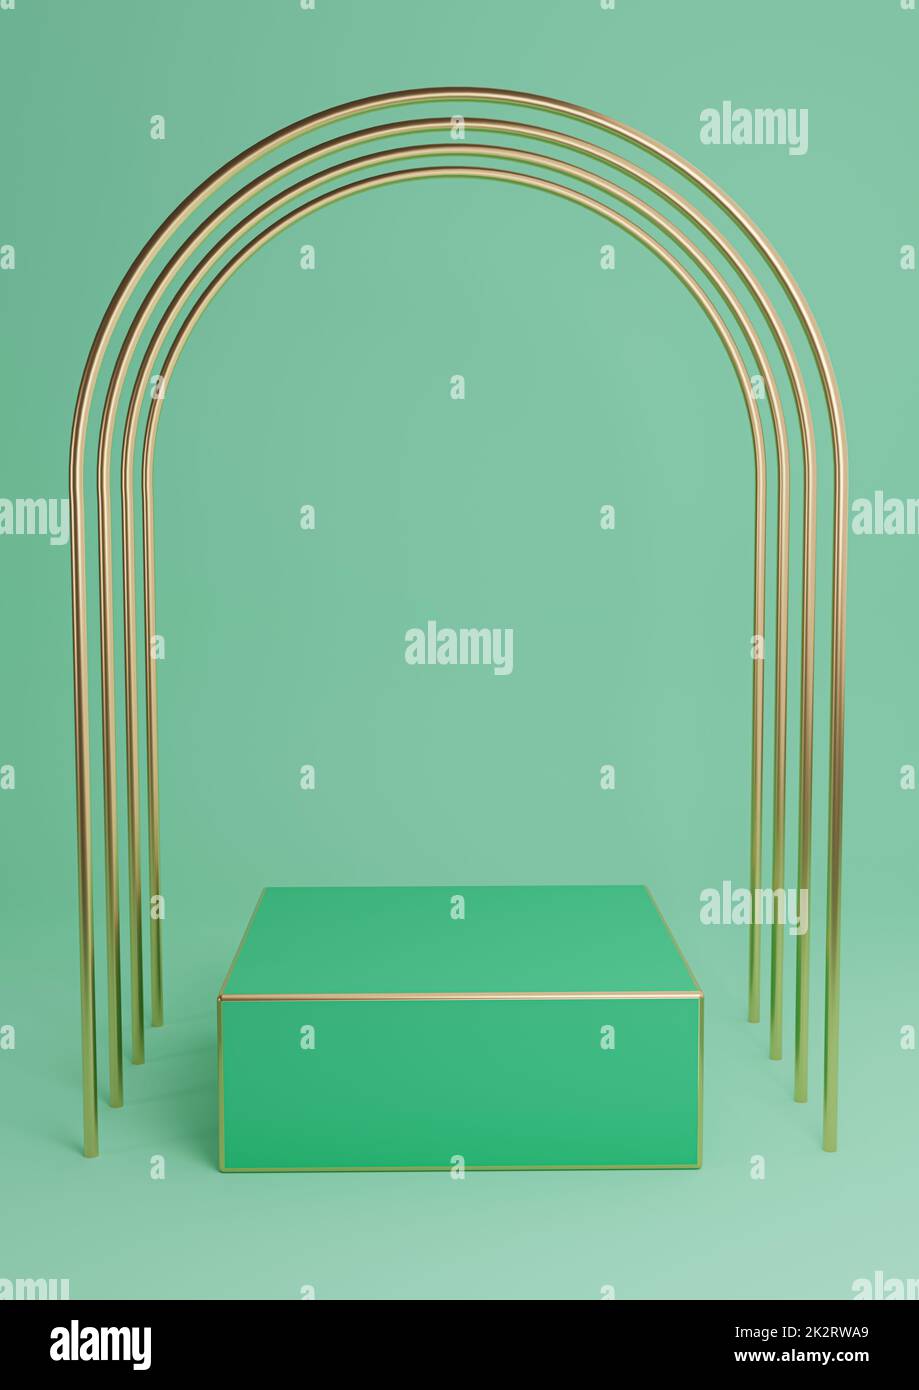 Leuchtendes türkisfarbenes Grün 3D für minimalistische Produktpräsentation, Würfeltreppchen oder Ständer mit luxuriösen goldenen Bögen und goldenen Linien. Einfache abstrakte Hintergrundkomposition. Stockfoto